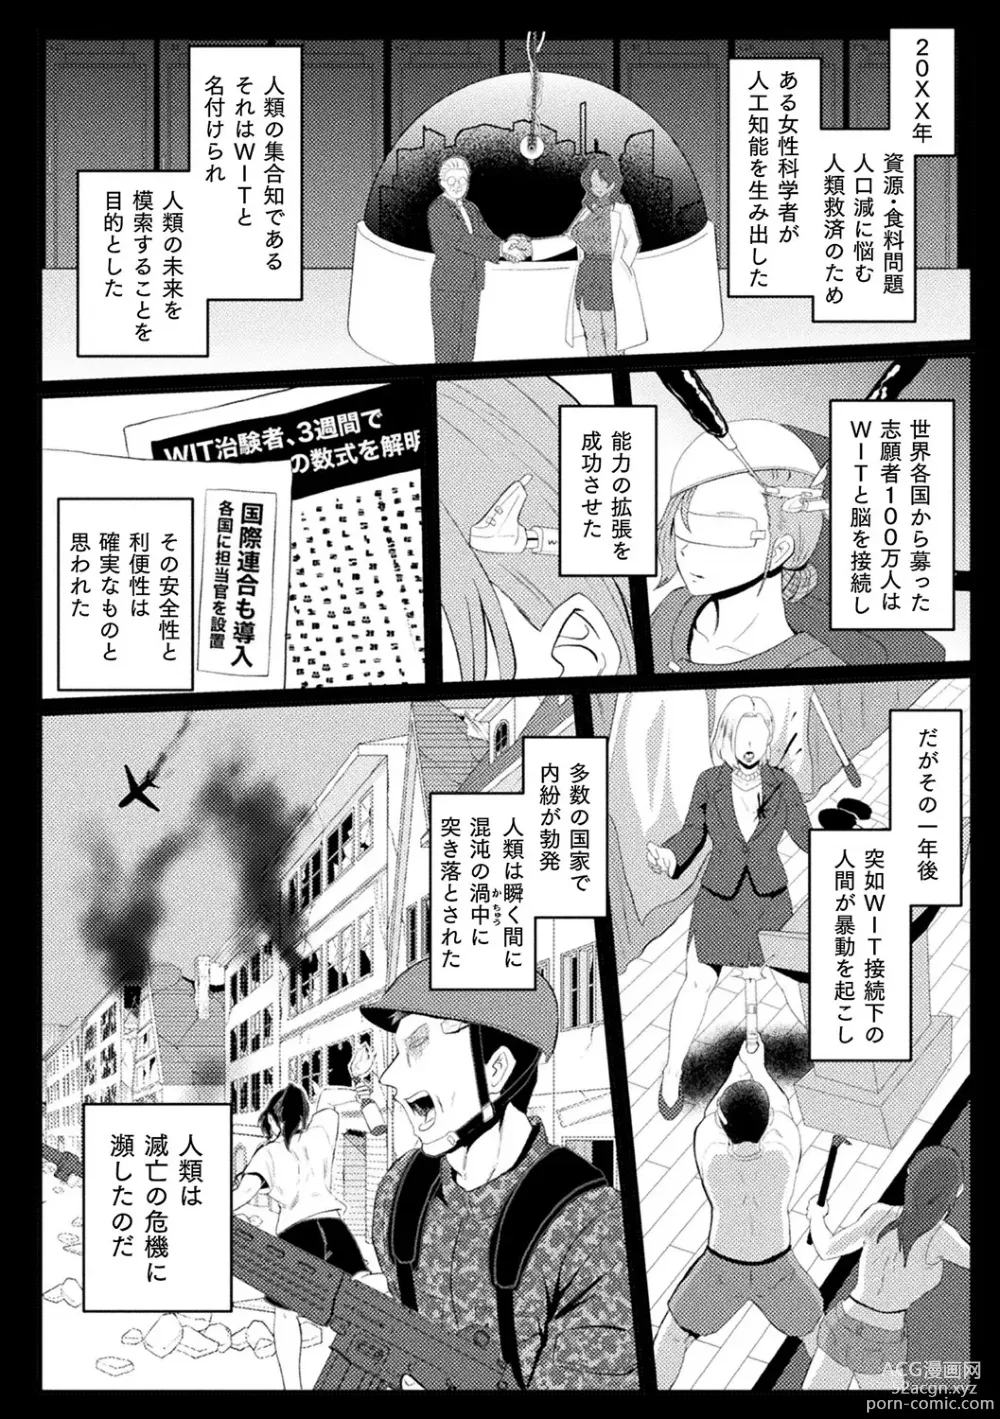 Page 6 of manga Bessatsu Comic Unreal AI ni Wakaraserareru Jinrui Hen Vol. 2